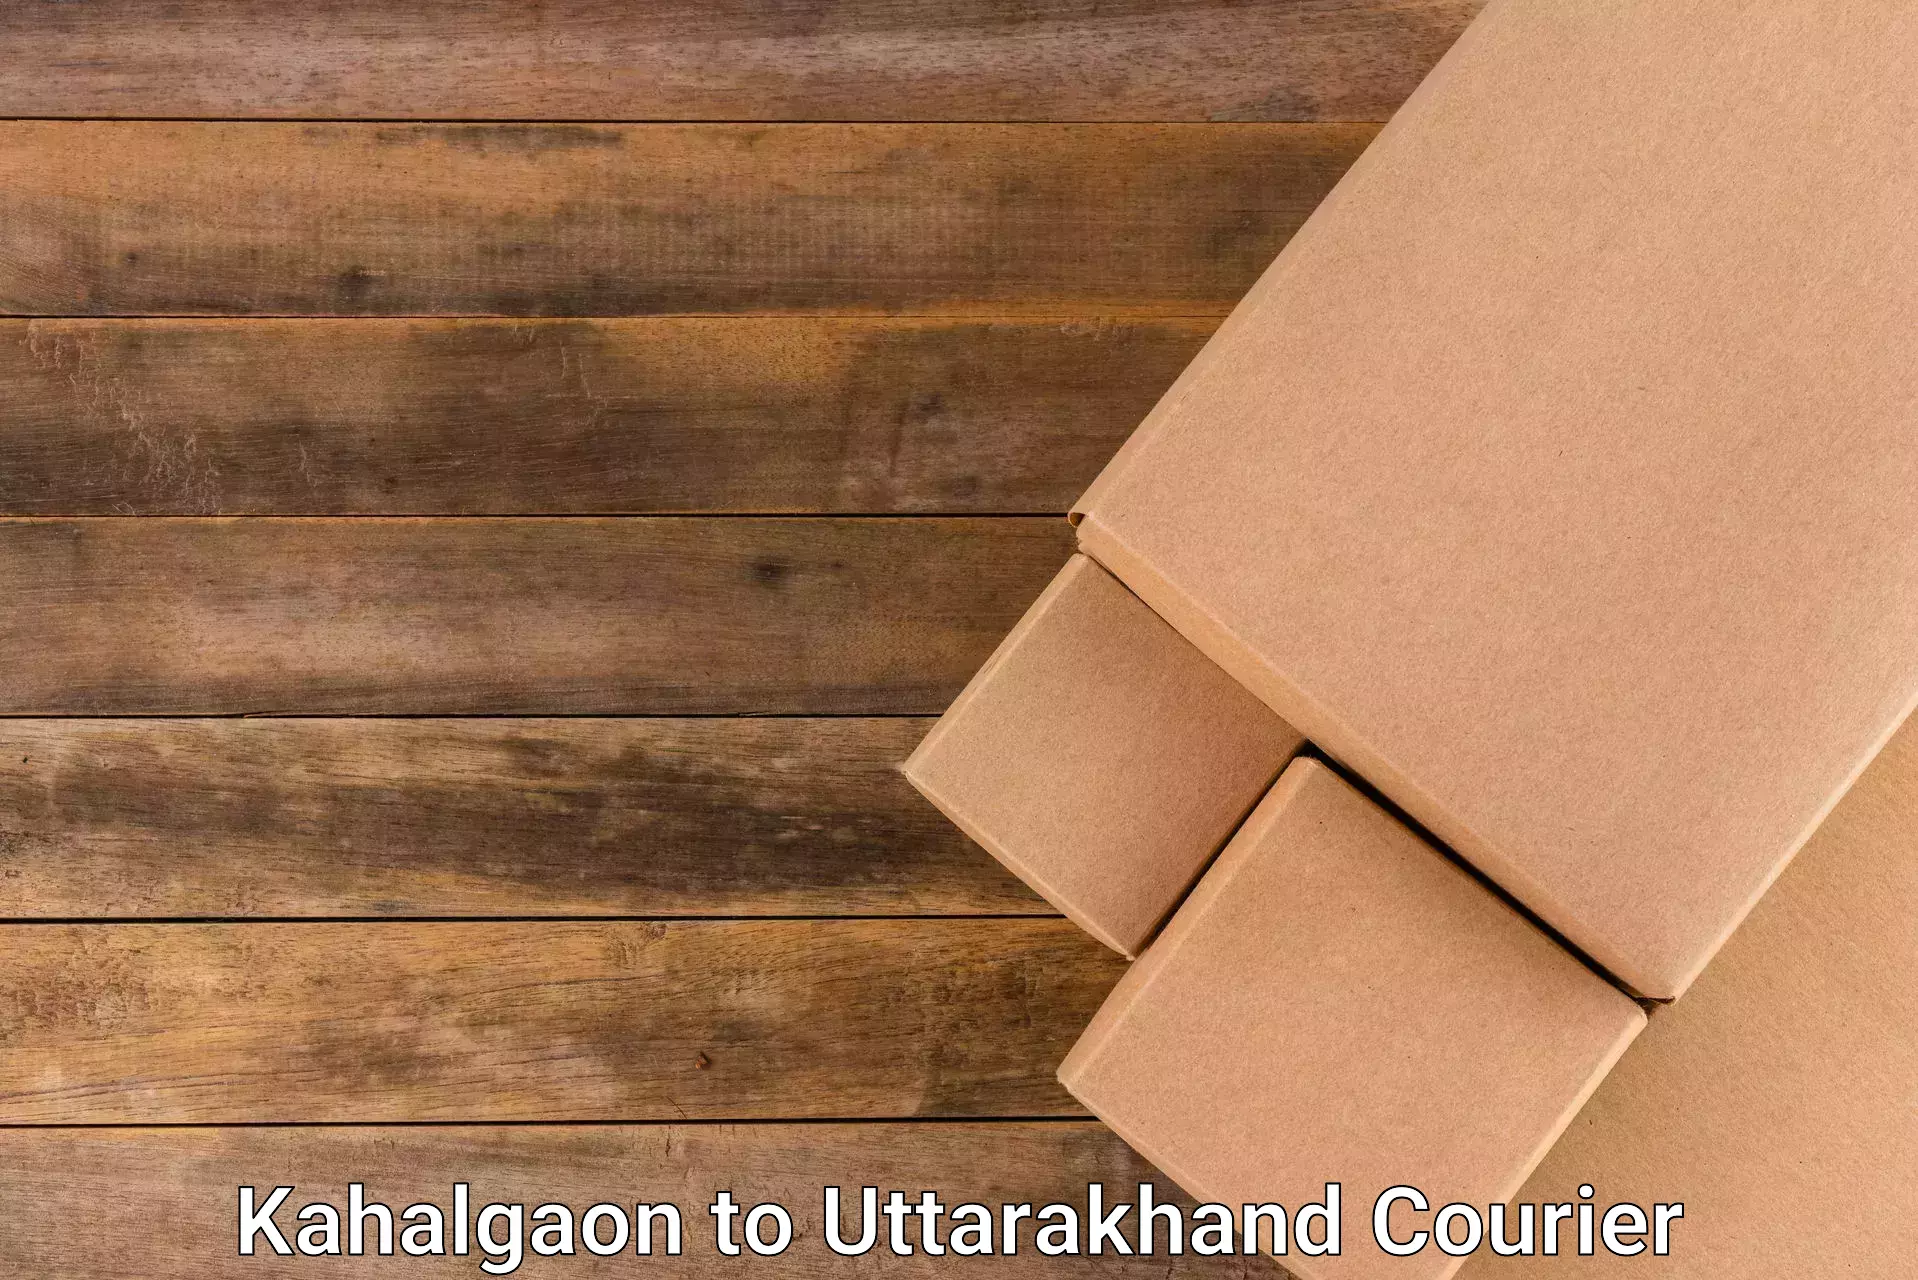 Specialized shipment handling Kahalgaon to Uttarakhand